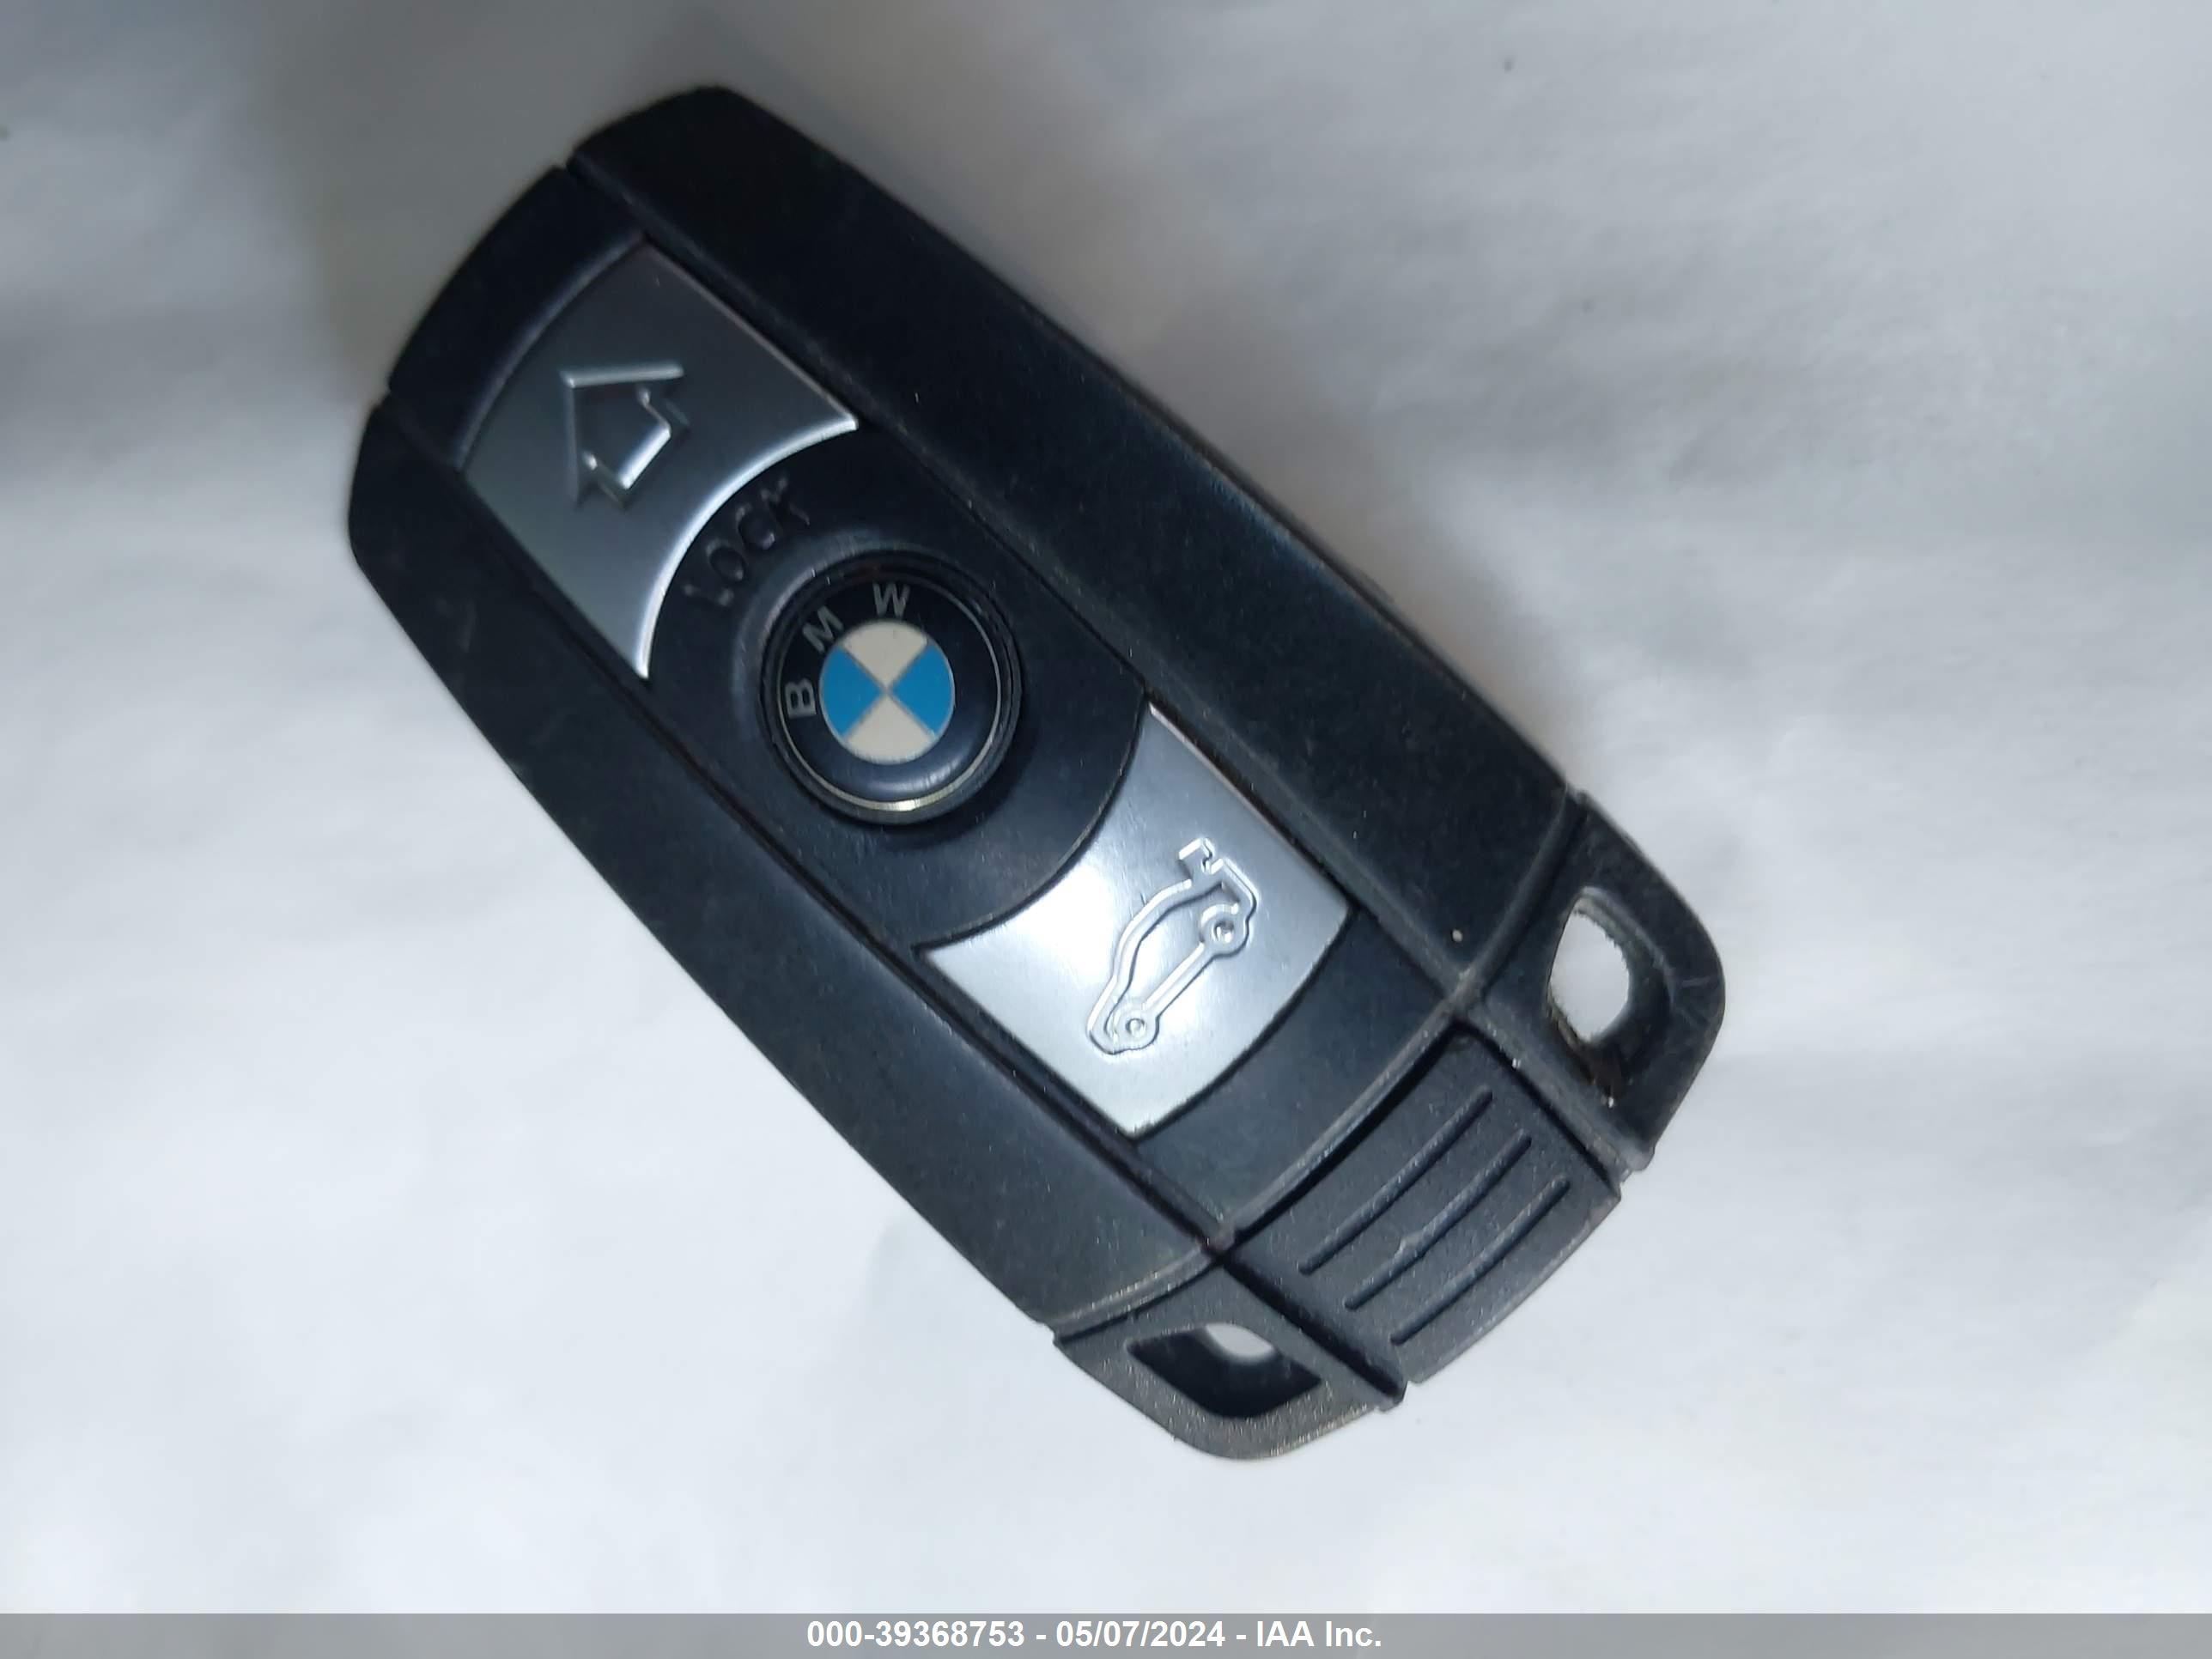 5UXFG2C50E0K41555 2014 BMW X6 xDrive35I